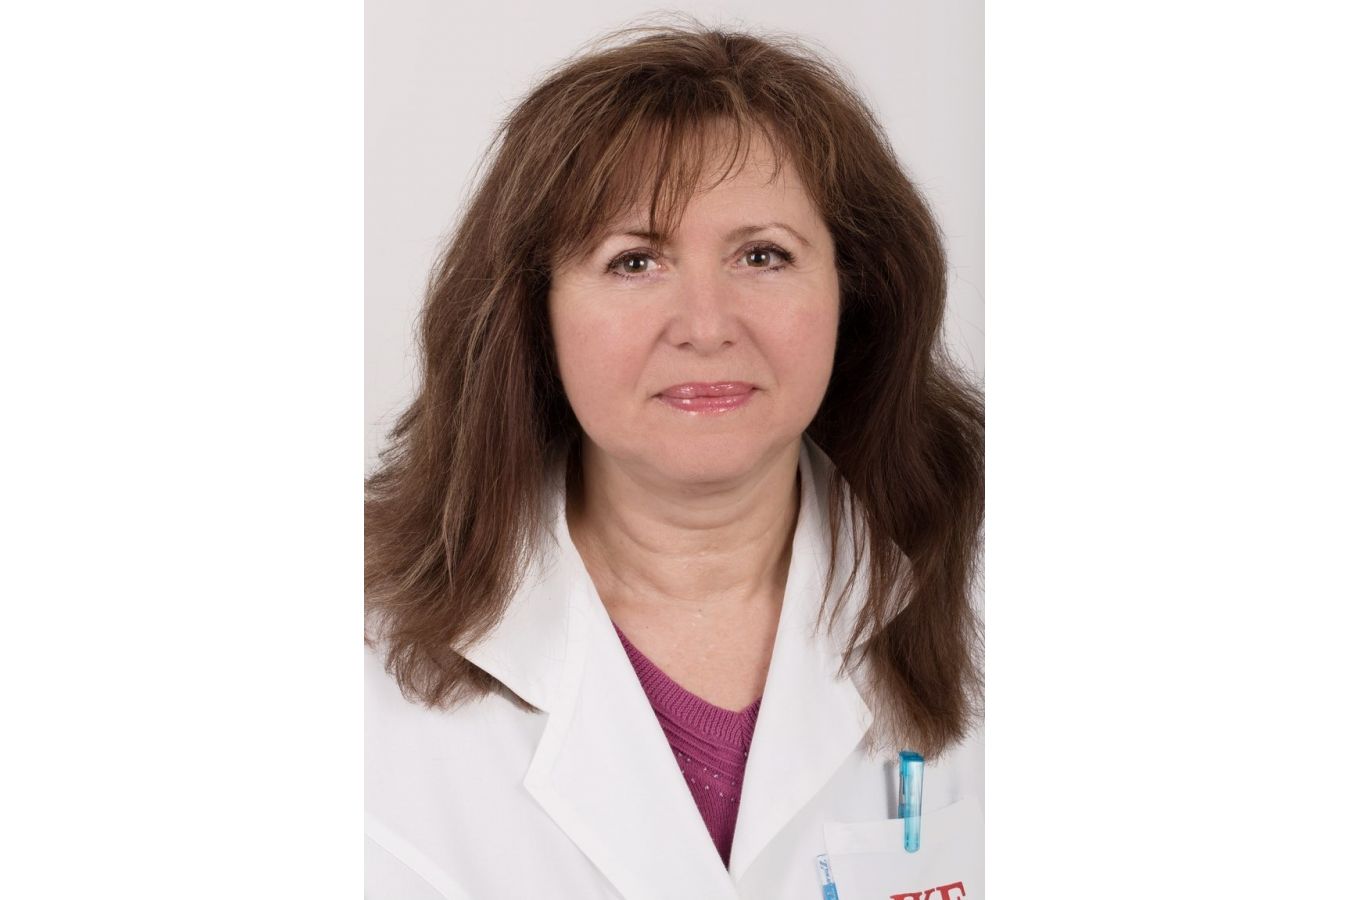 Profesorka Věra Adámková: Nerezignujte na život! Choďte ven, nezanedbávejte své zdraví!